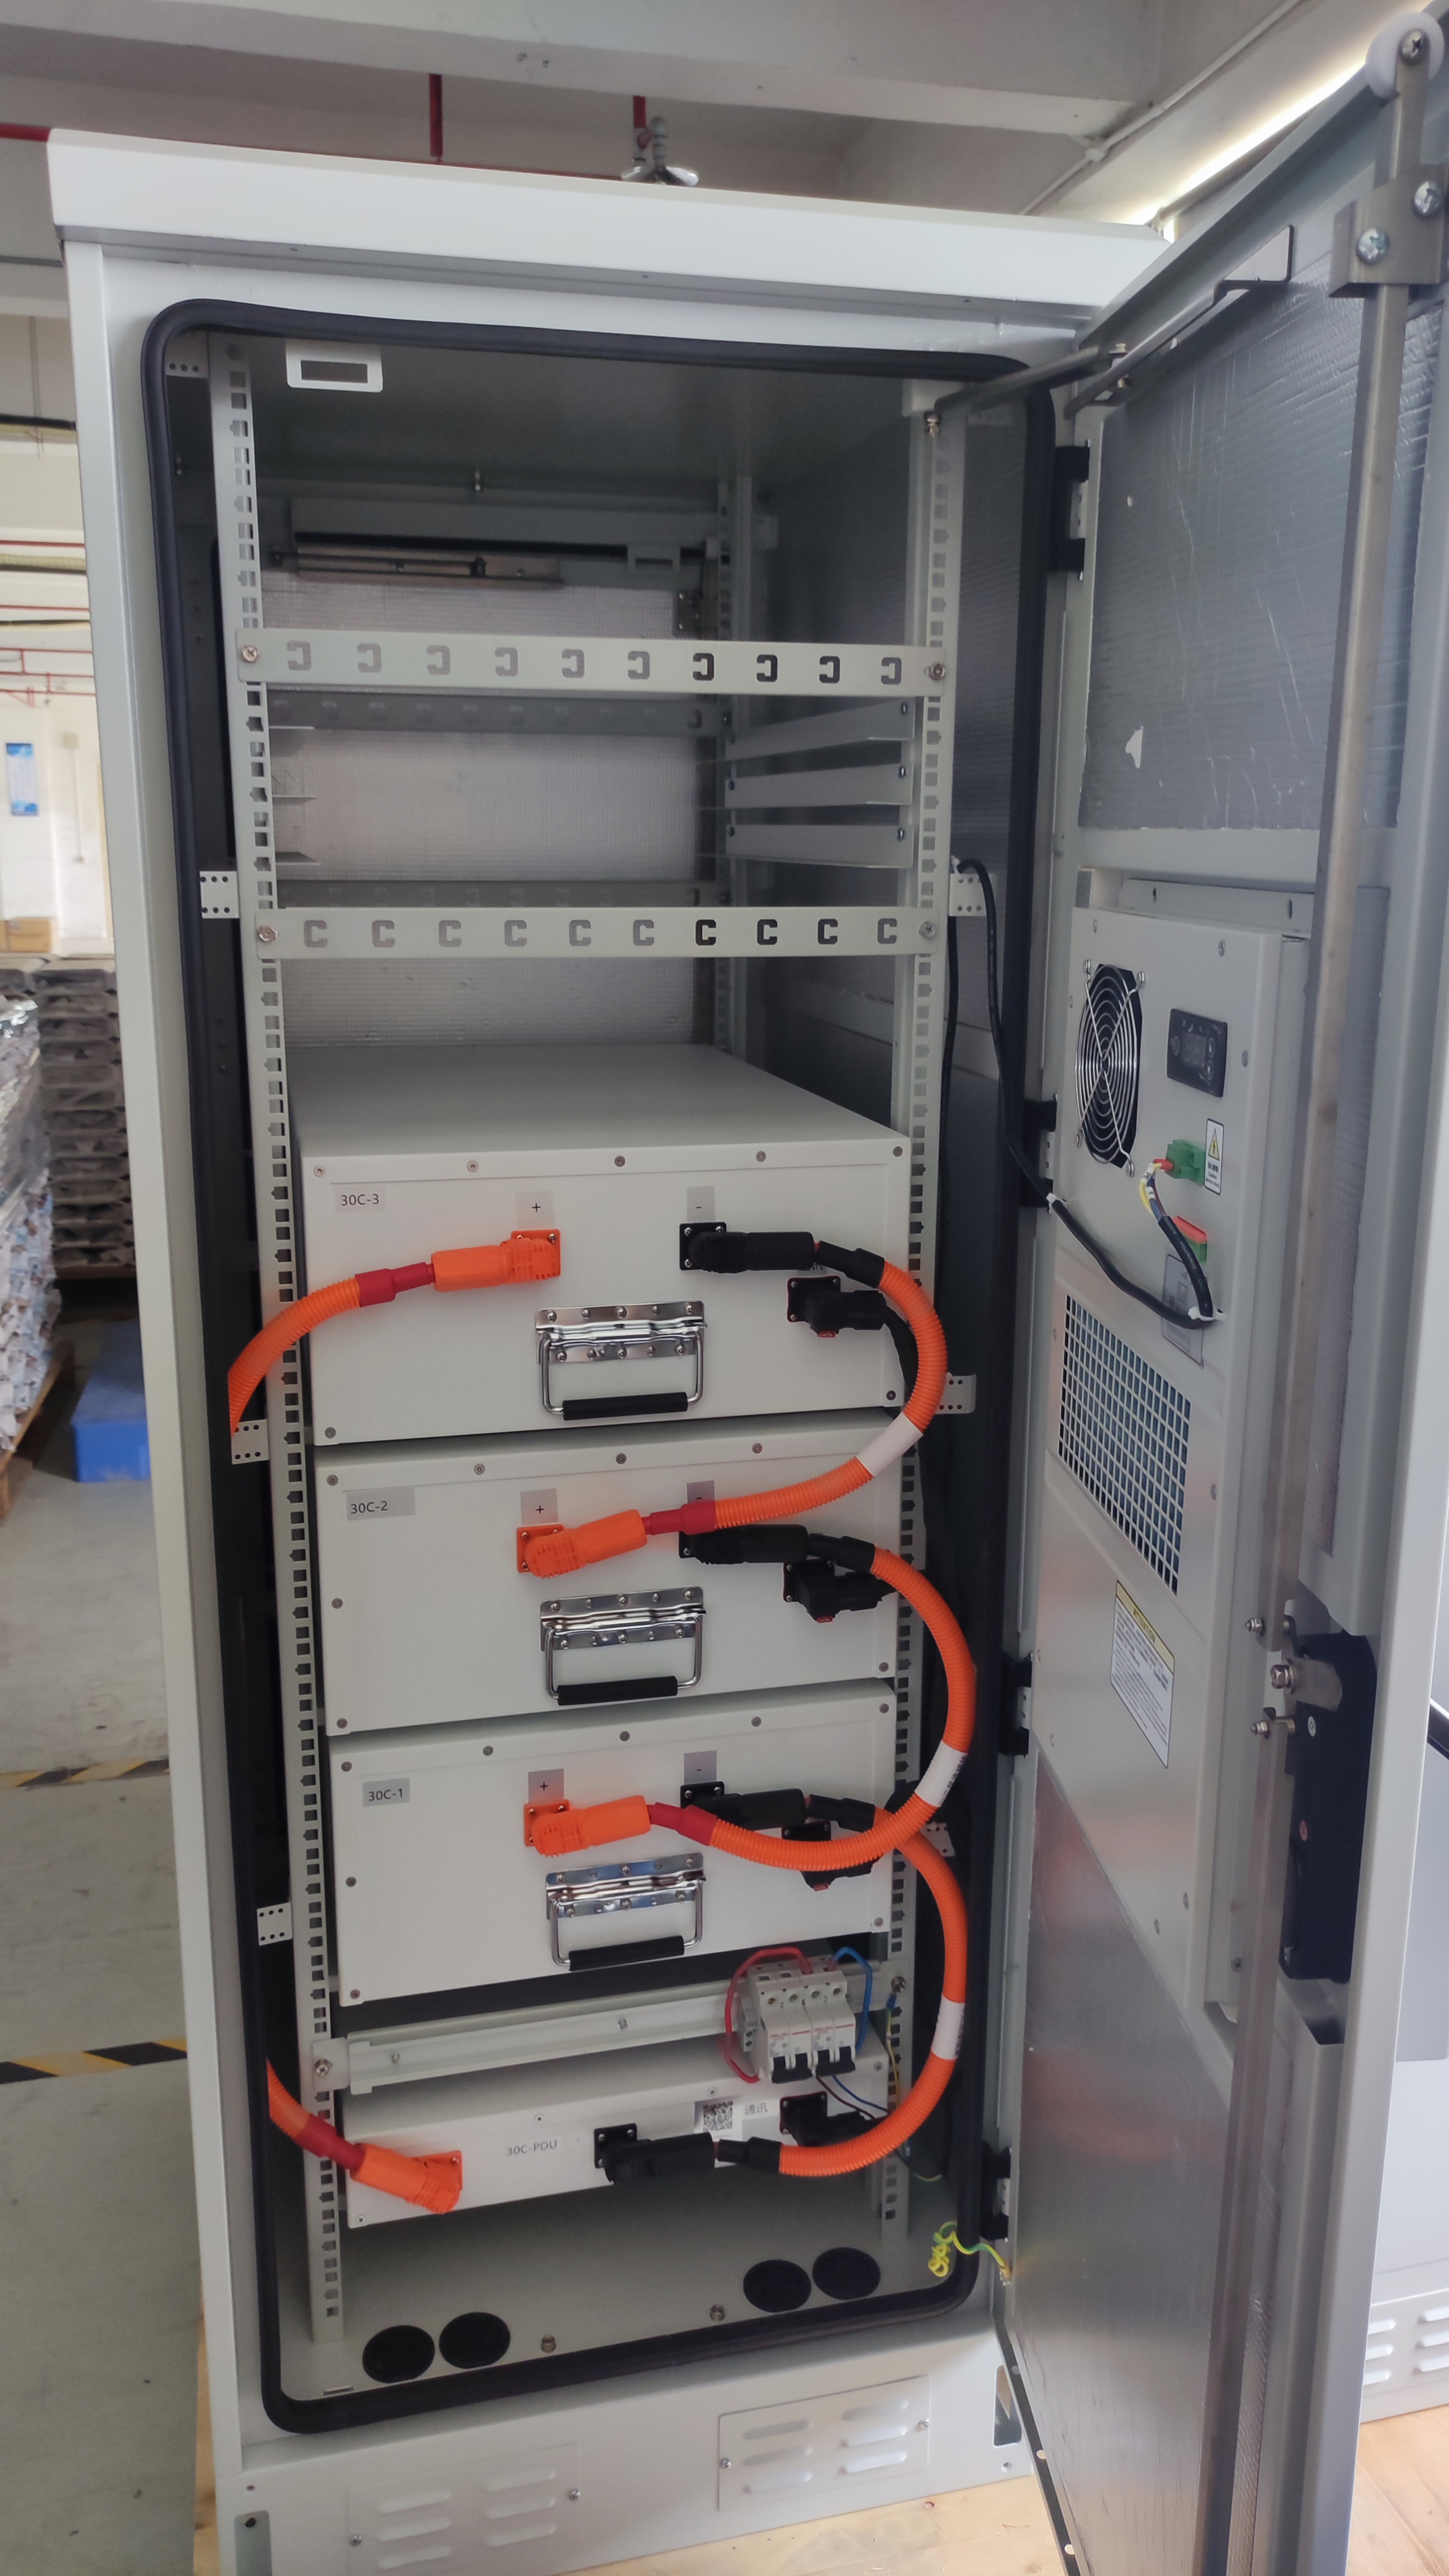 230V 50kWh C&I energy storage systems